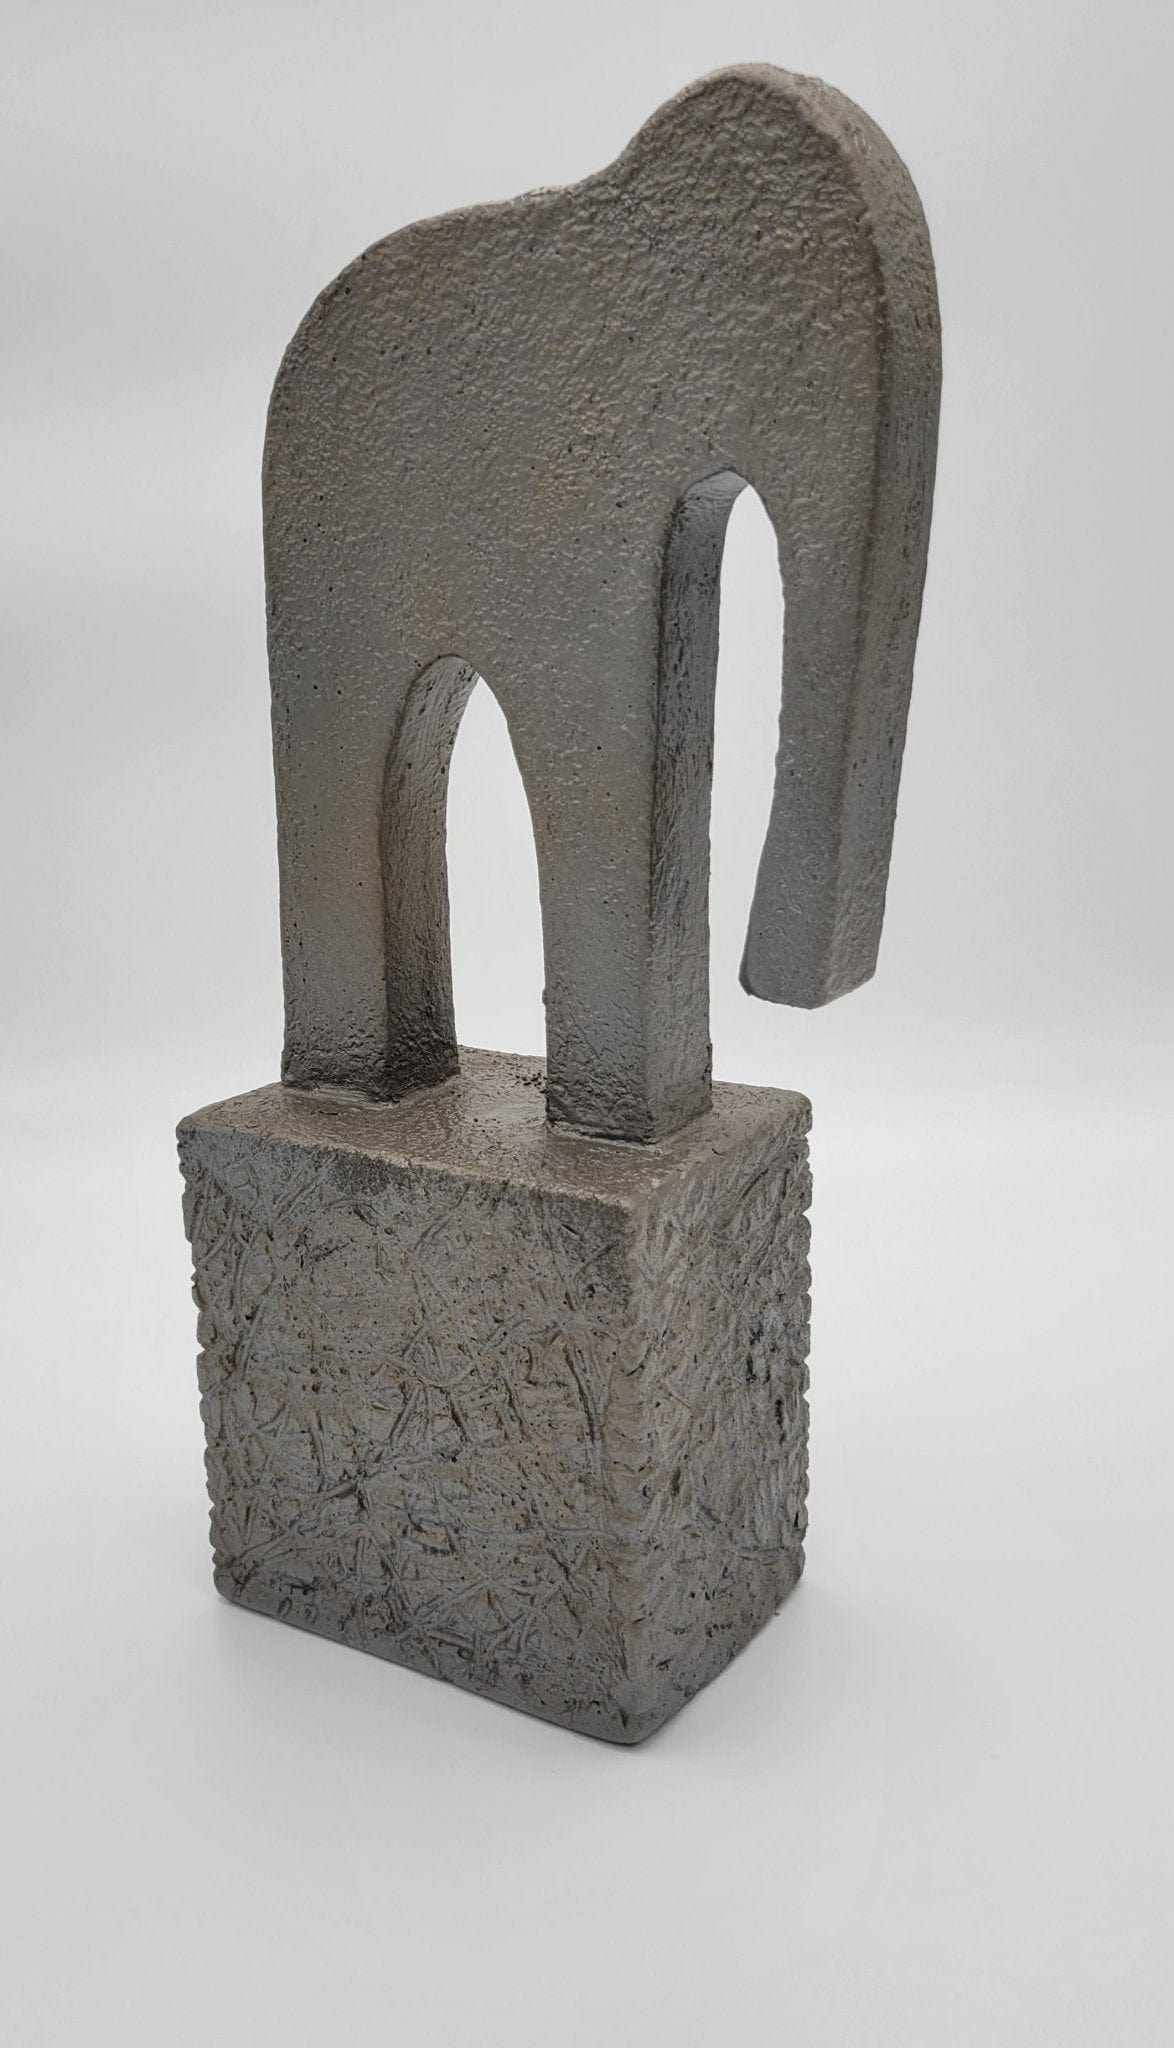 Jaru Sculpture RARE Superb Jaru California Ceramic Modernist Style LARGE Elephant Sculpture 1980s